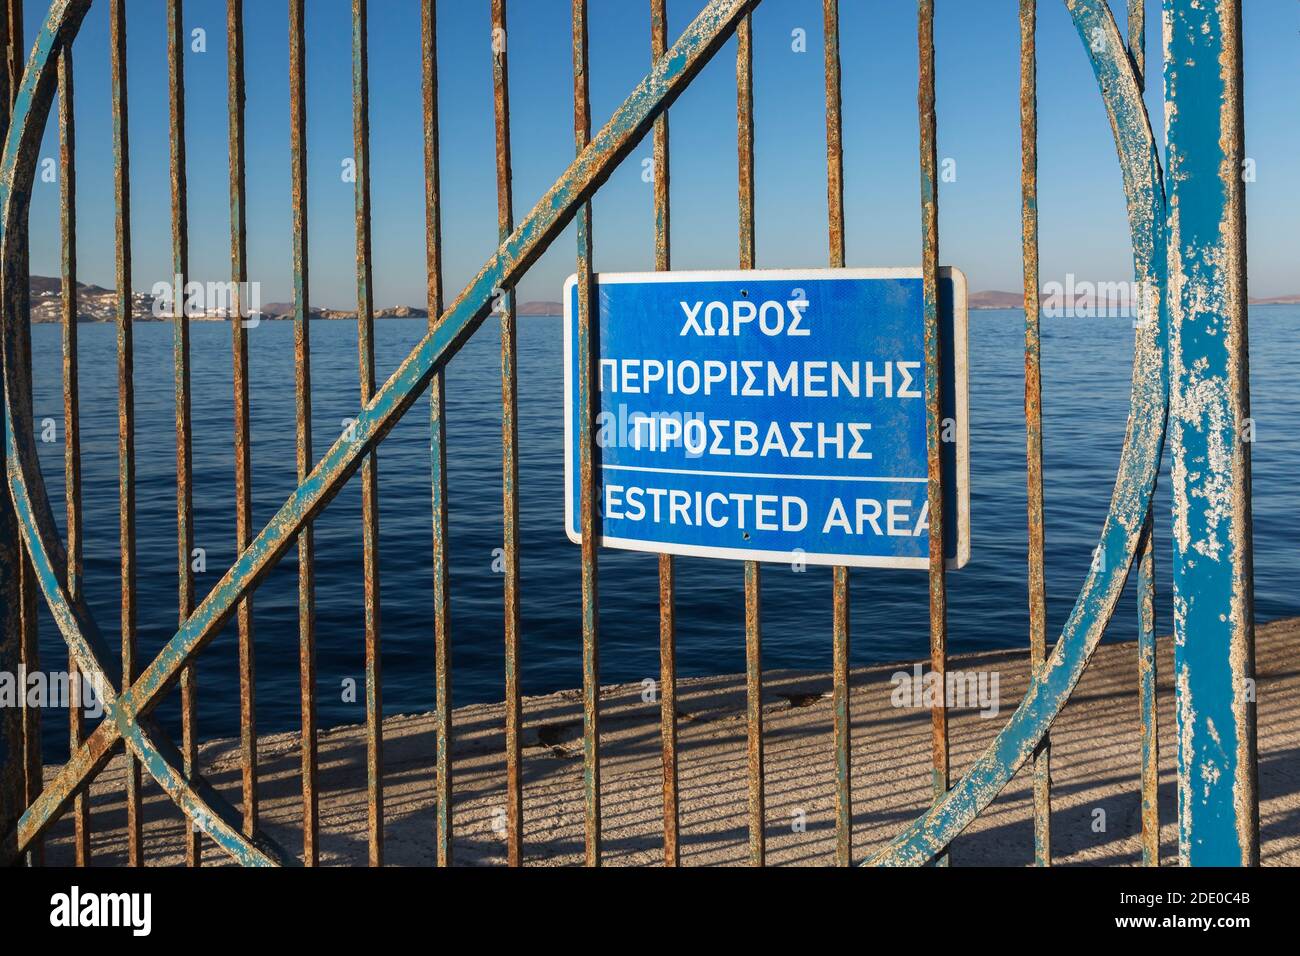 Gros plan du panneau d'avertissement de zone réglementée en grec et en anglais affiché sur la porte en fer rouillé bleu, nouveau port de Mykonos, île de Mykonos, Grèce Banque D'Images